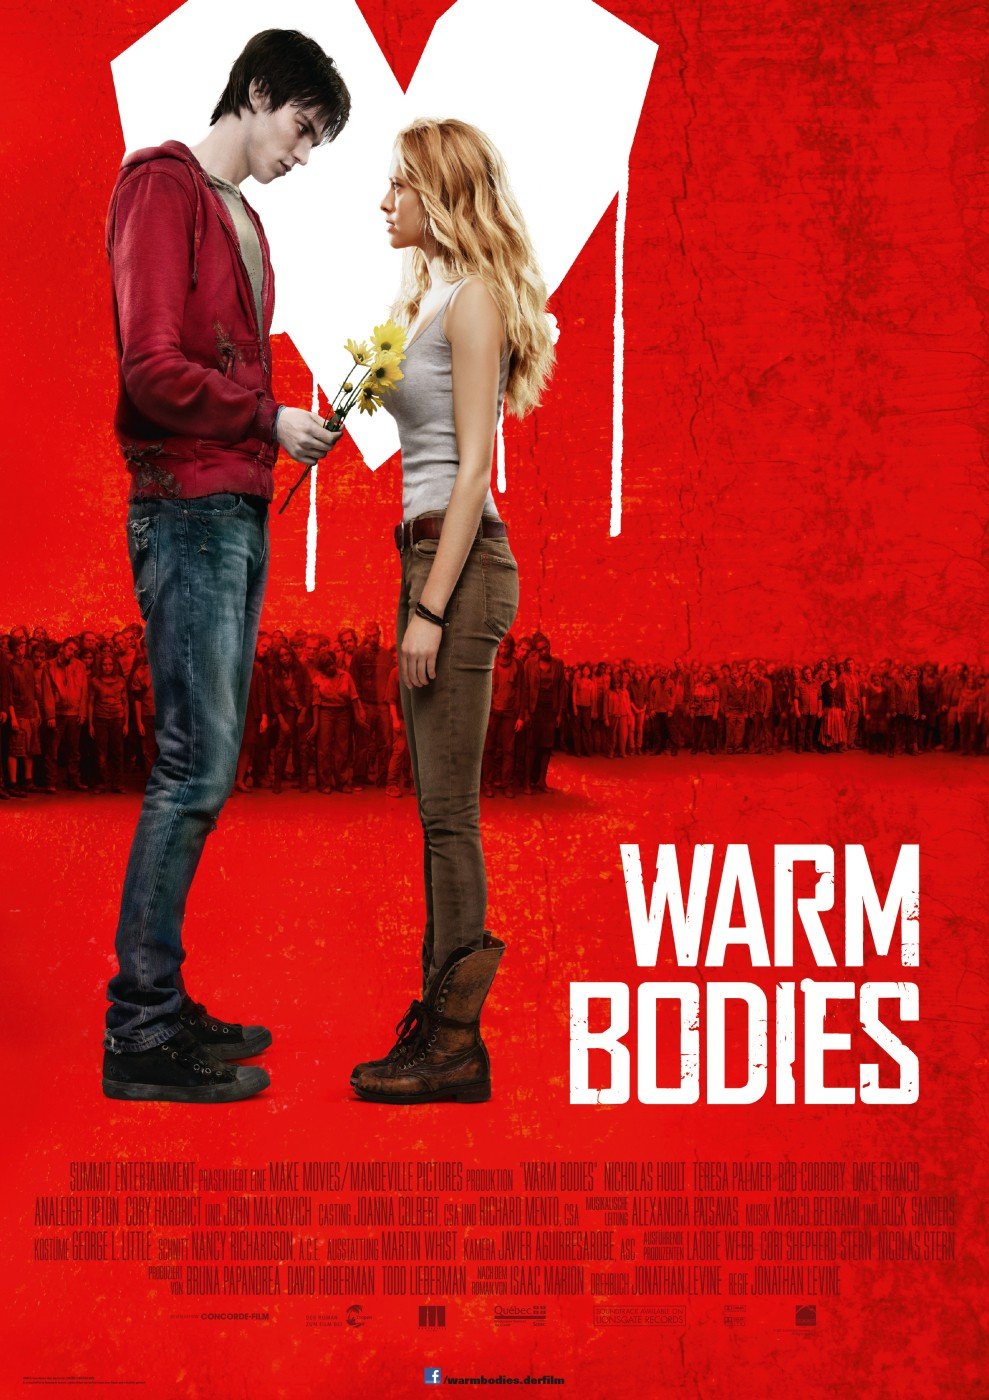 Warm Bodies (2013) - Assistant Score Mixer